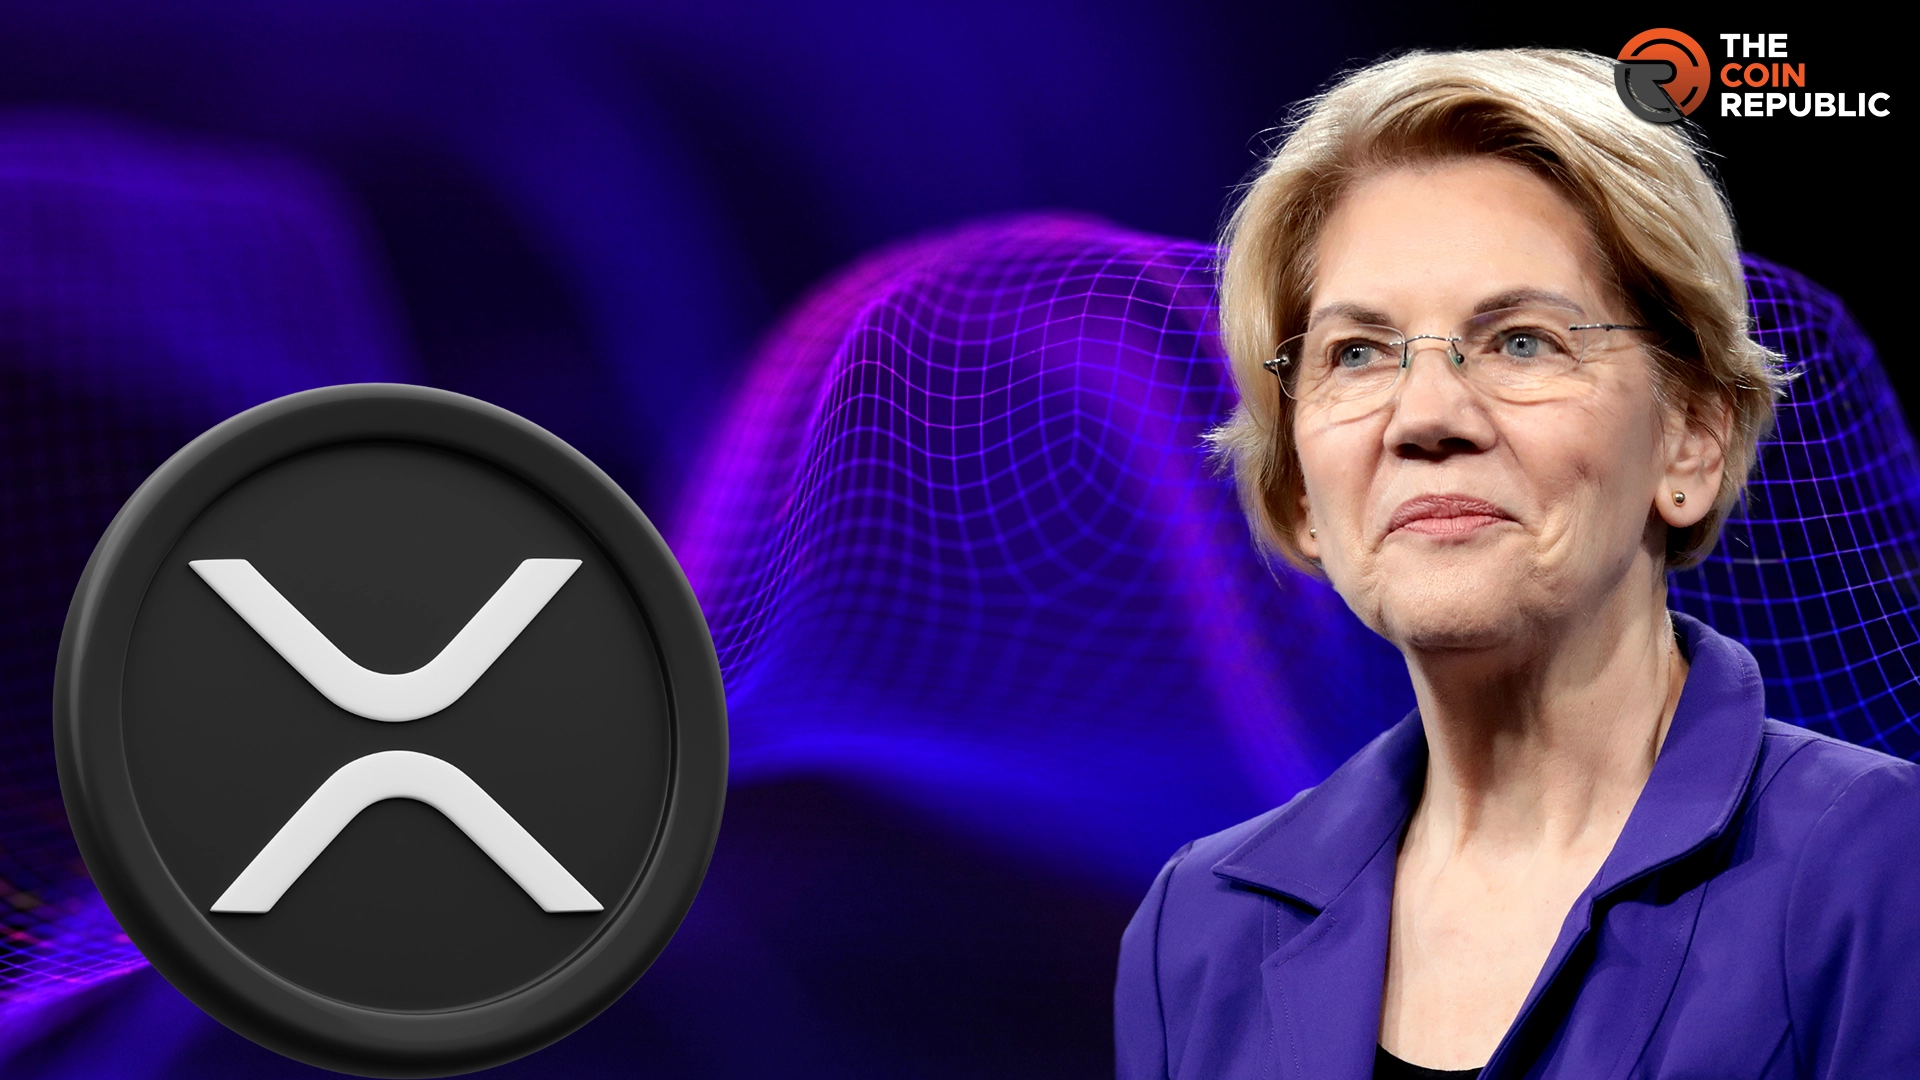 John Deaton Criticized Senator Elizabeth Warren’s Tax Views